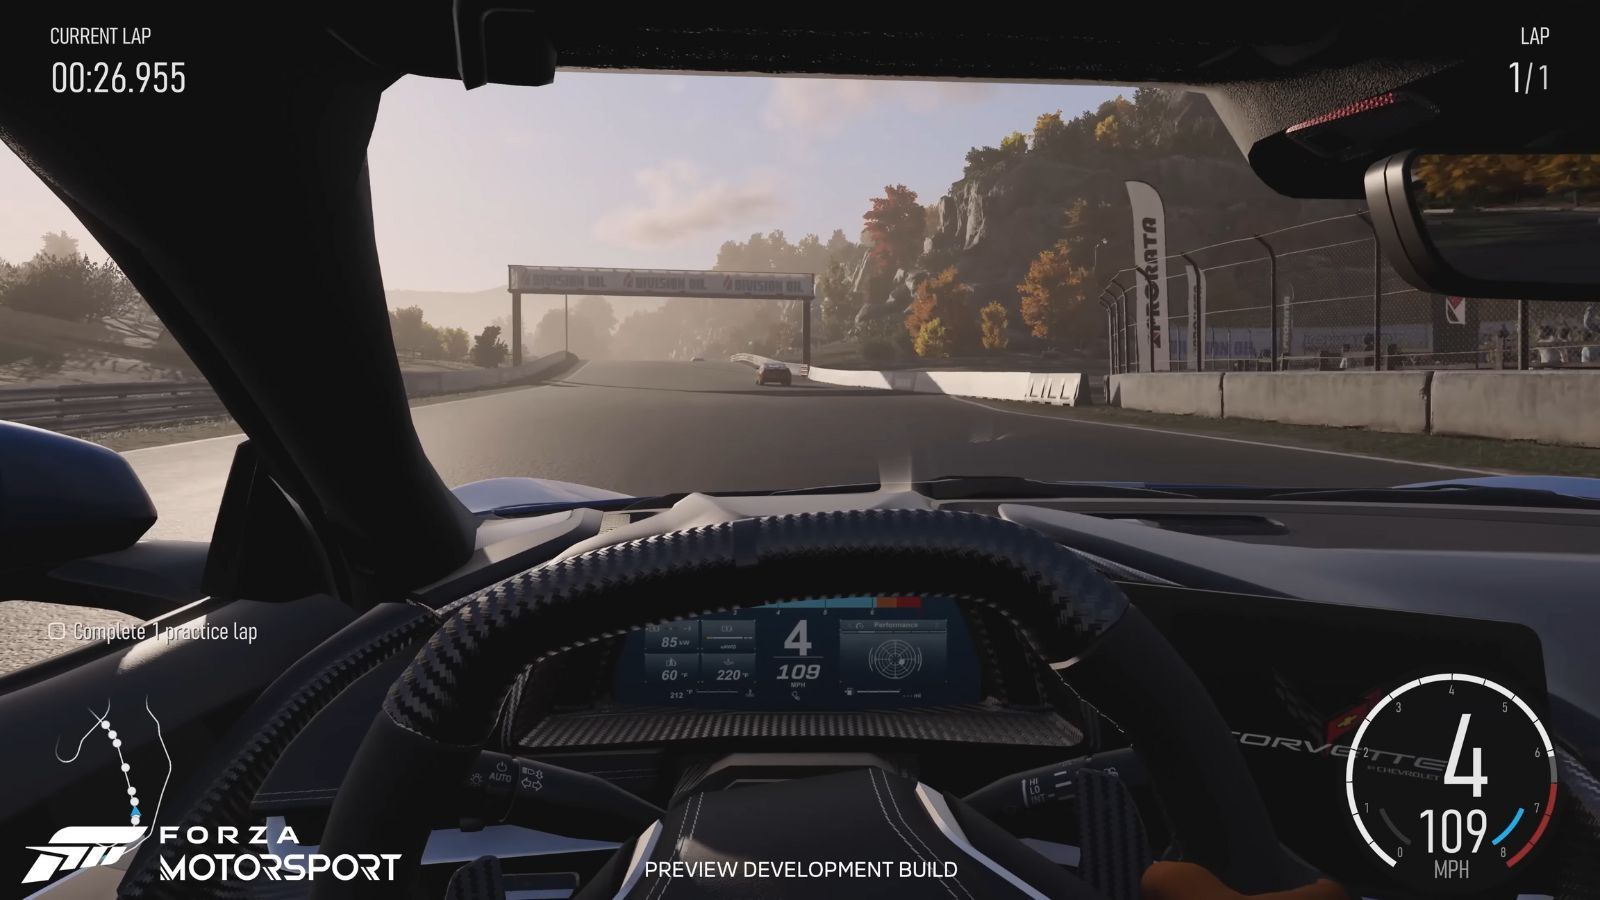 I giocatori di Forza Motorsport criticano gli specchietti retrovisori “orribili” del gioco